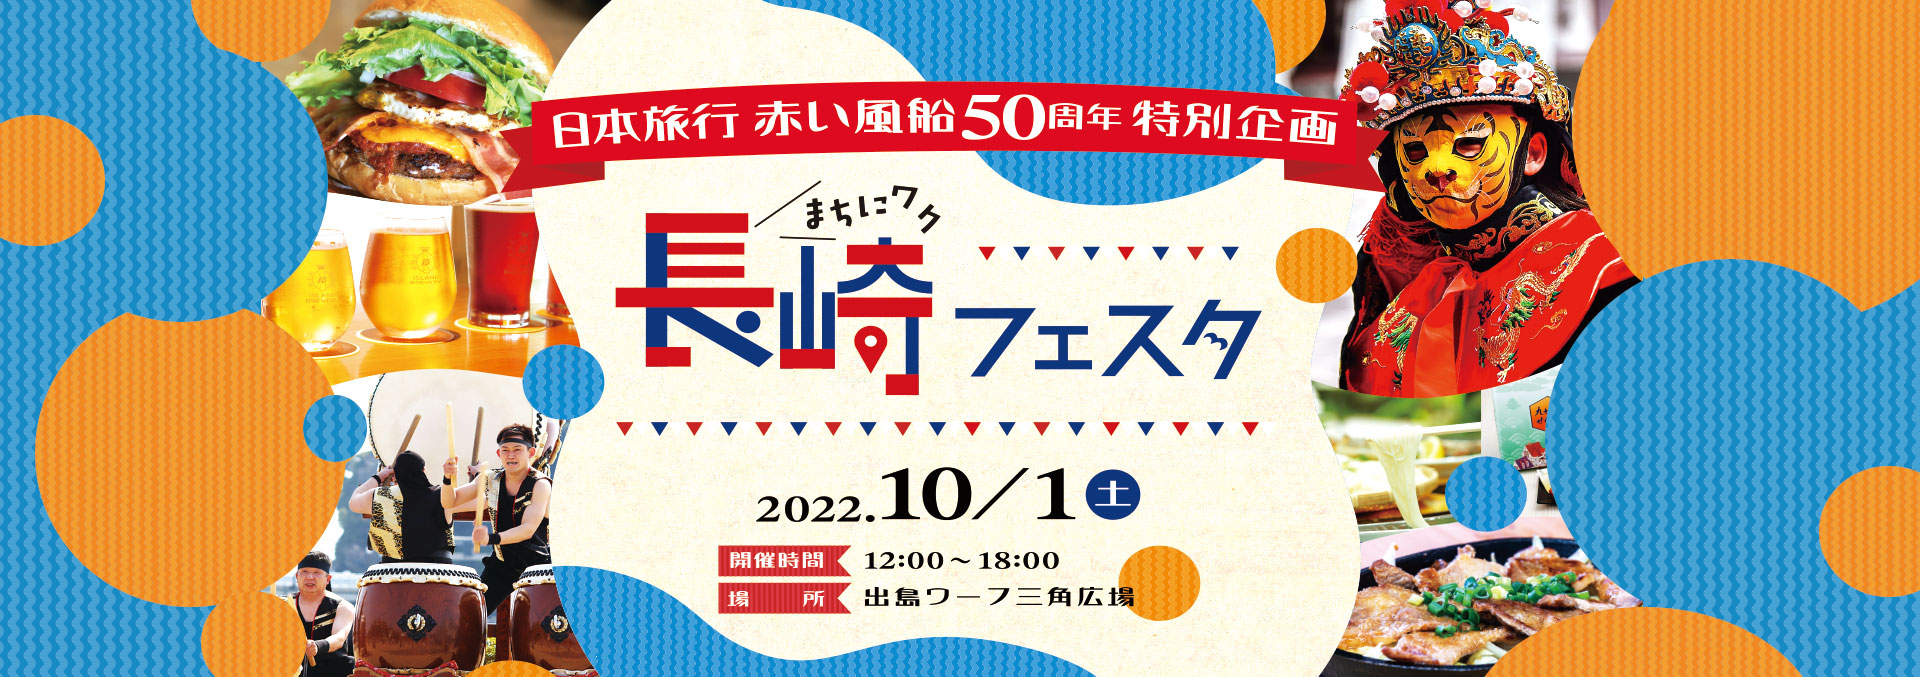 日本旅行 赤い風船50周年 特別企画「まちにワク長崎フェスタ」開催